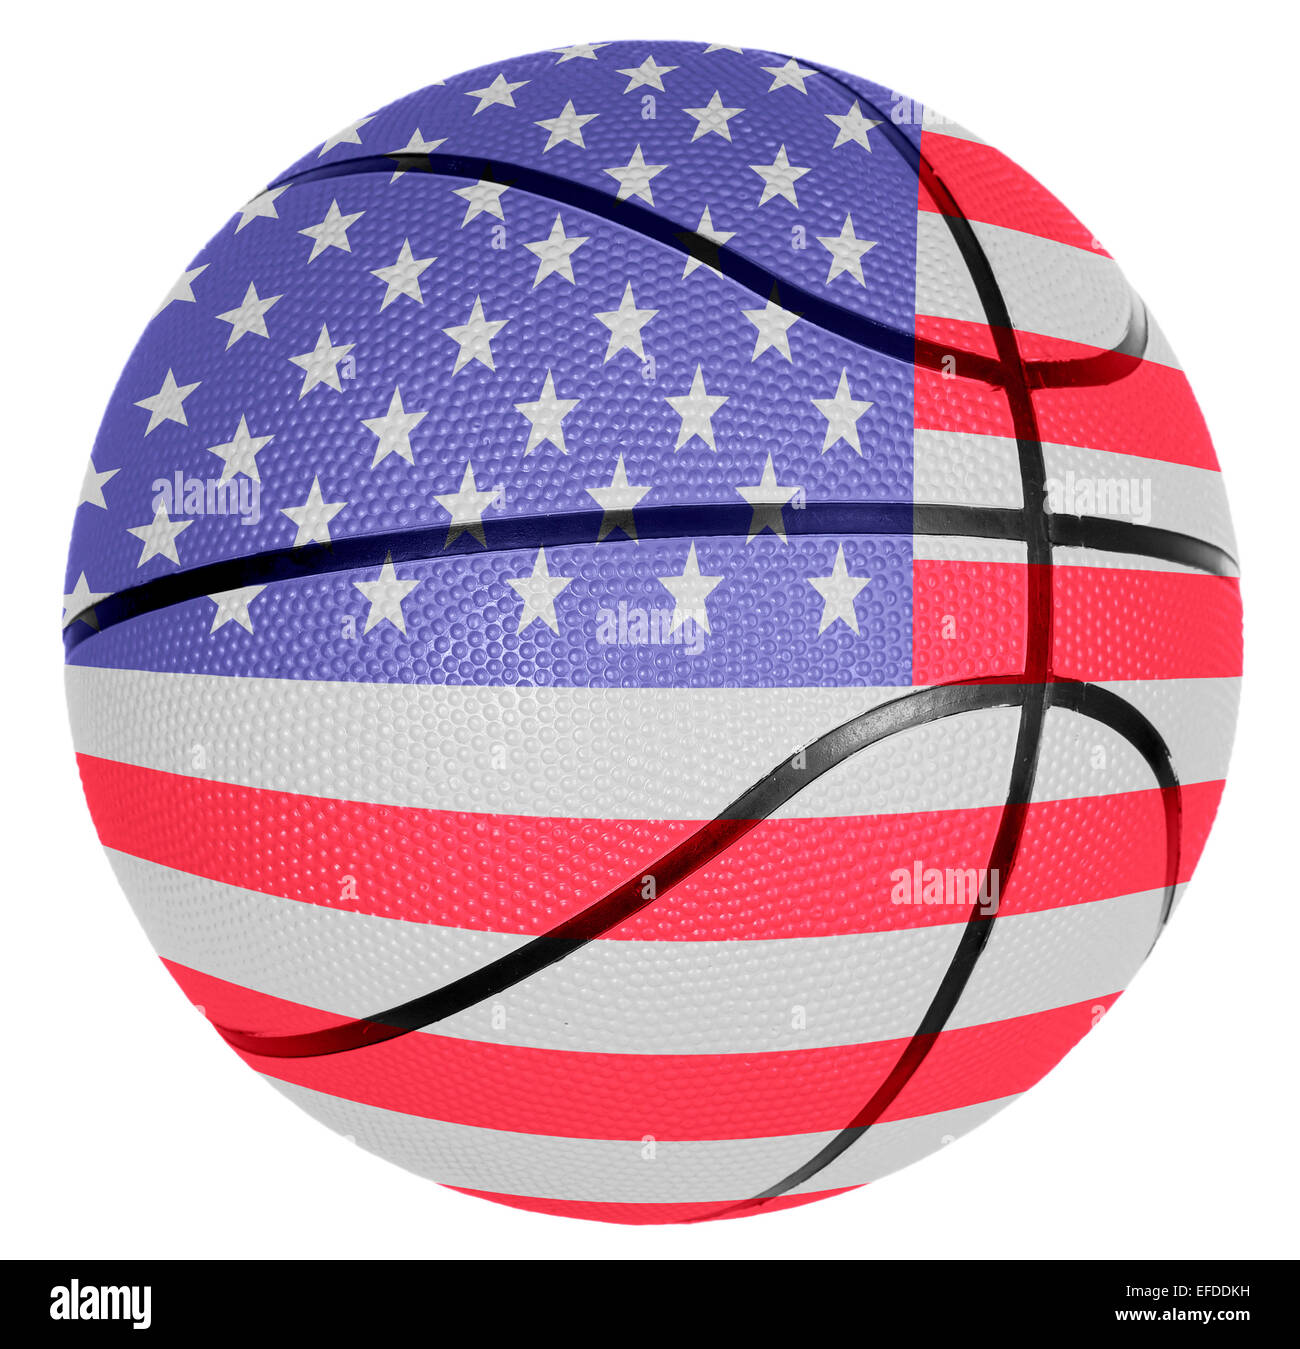 Ball with flag of USA for basketball game Stock Photo